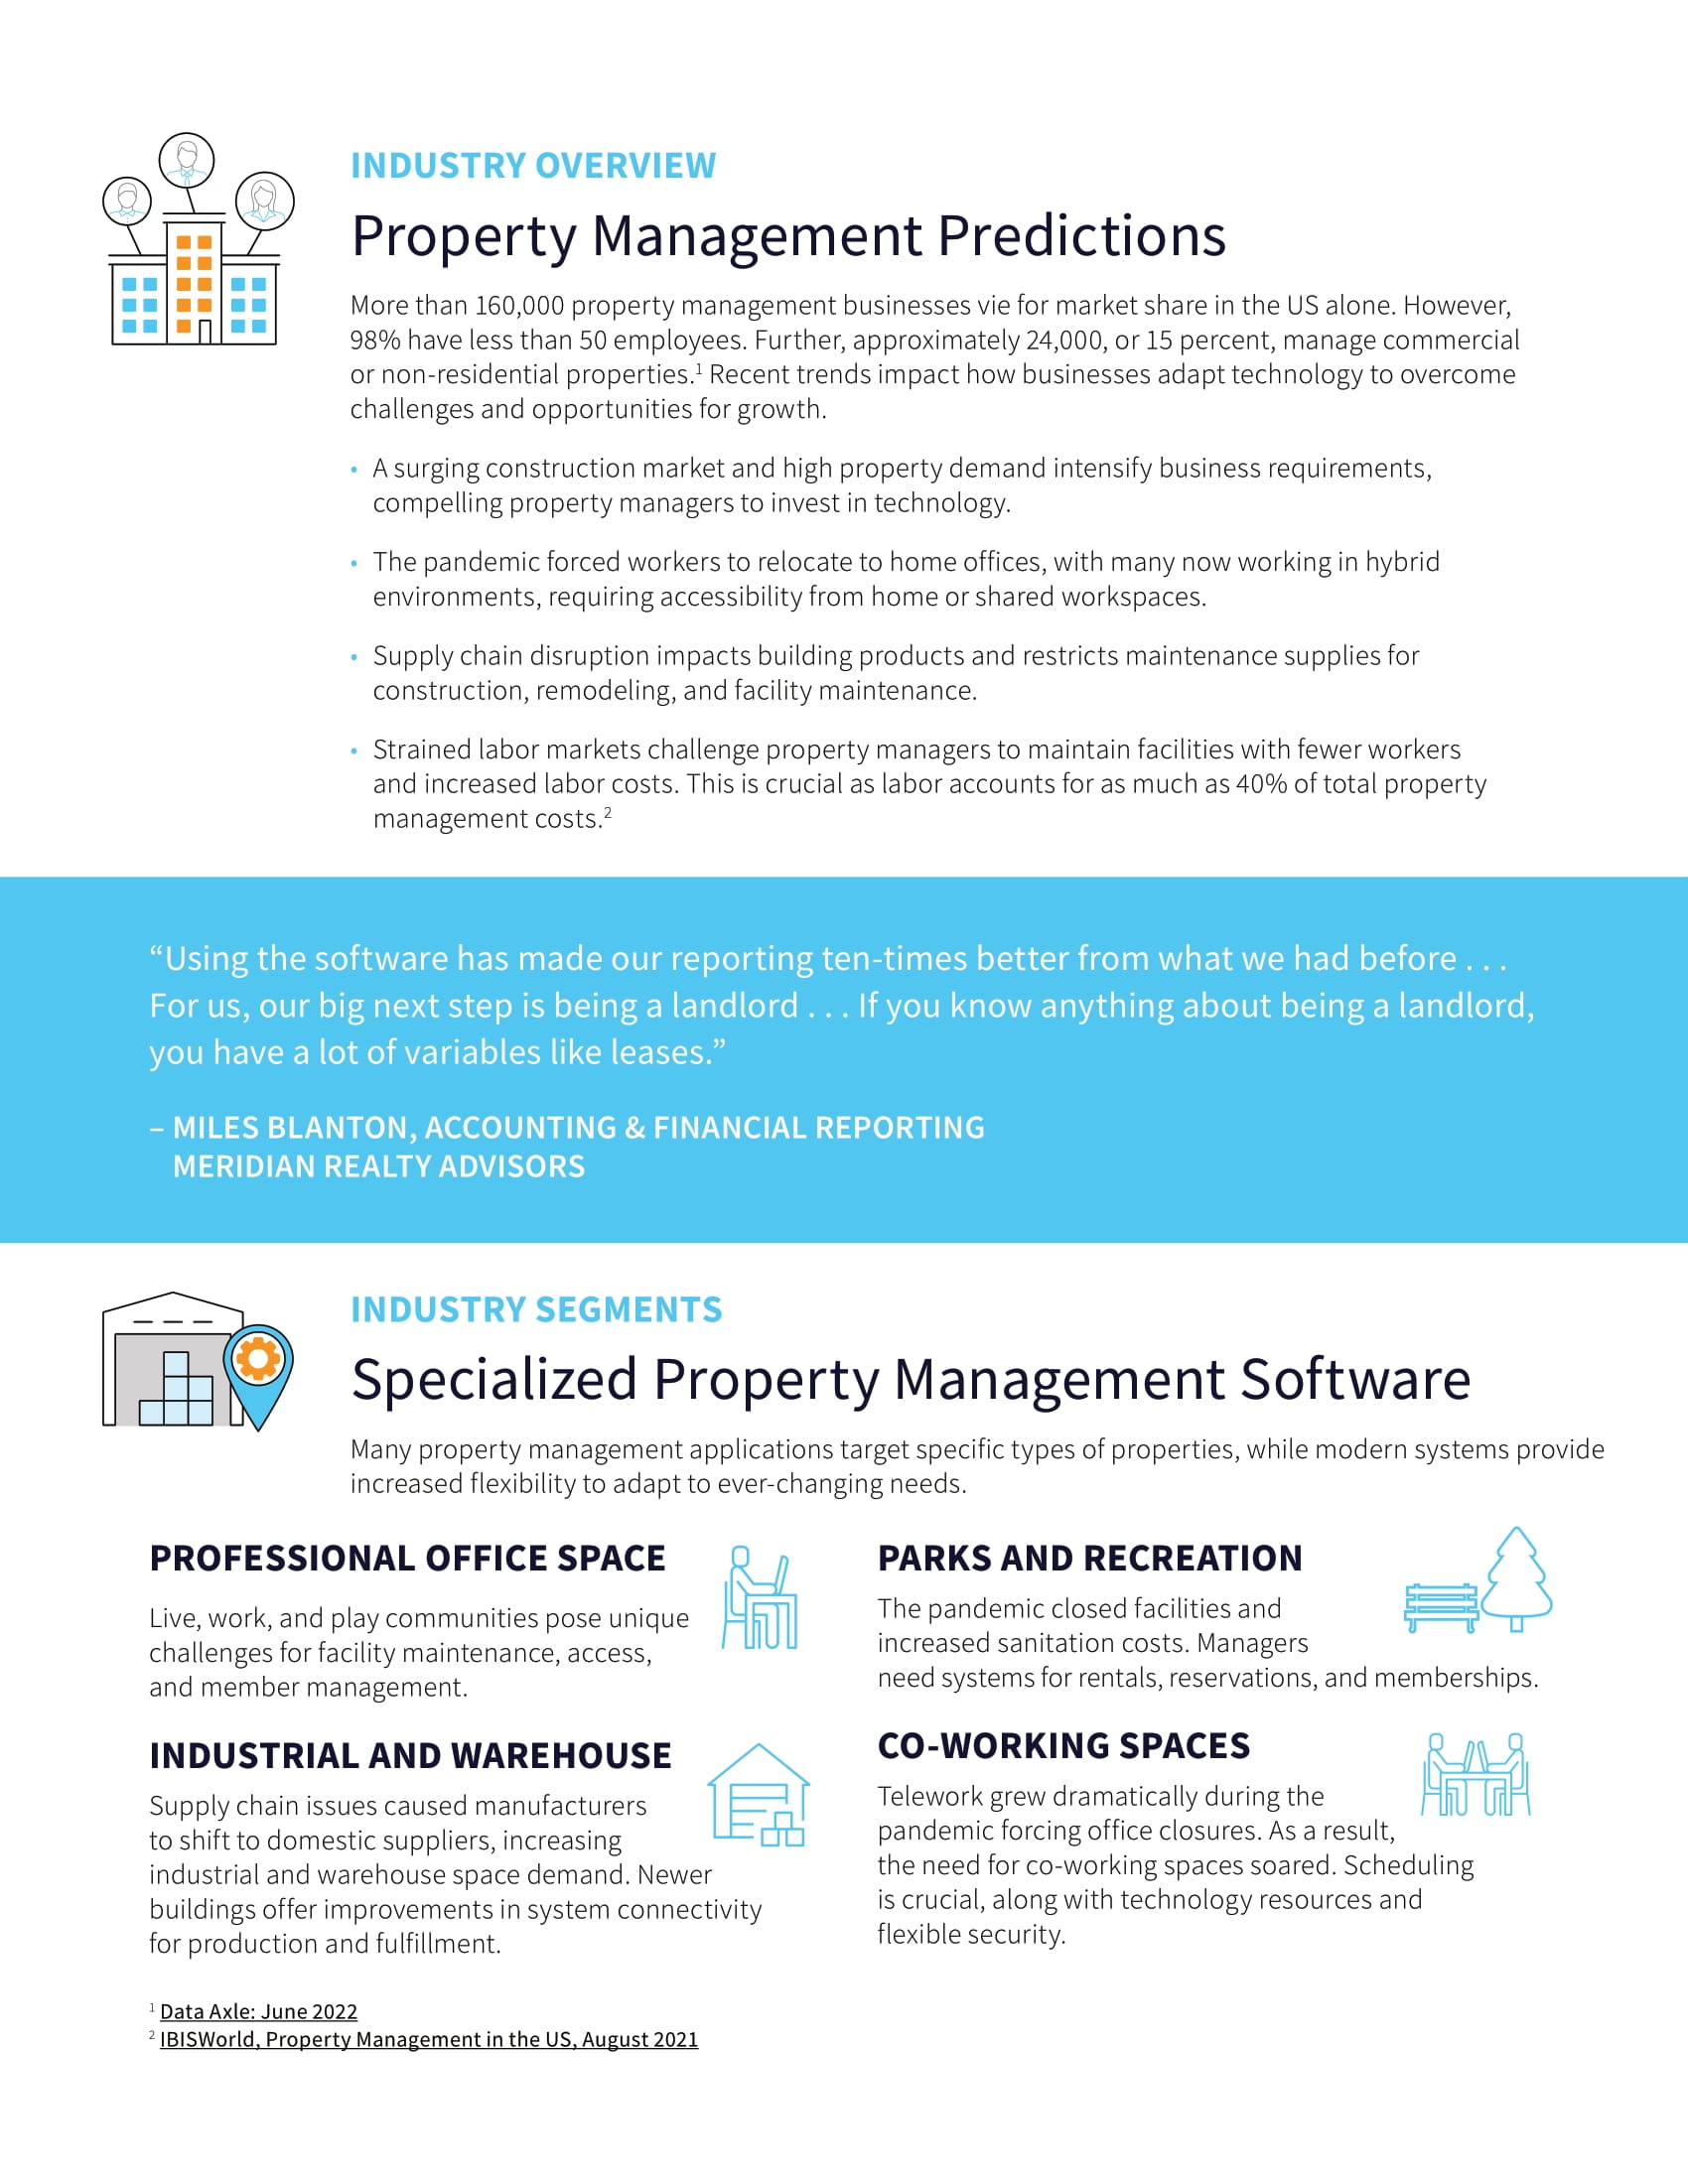 Mieux servir les locataires grâce à un système de gestion immobilière moderne et basé sur le cloud , page 1